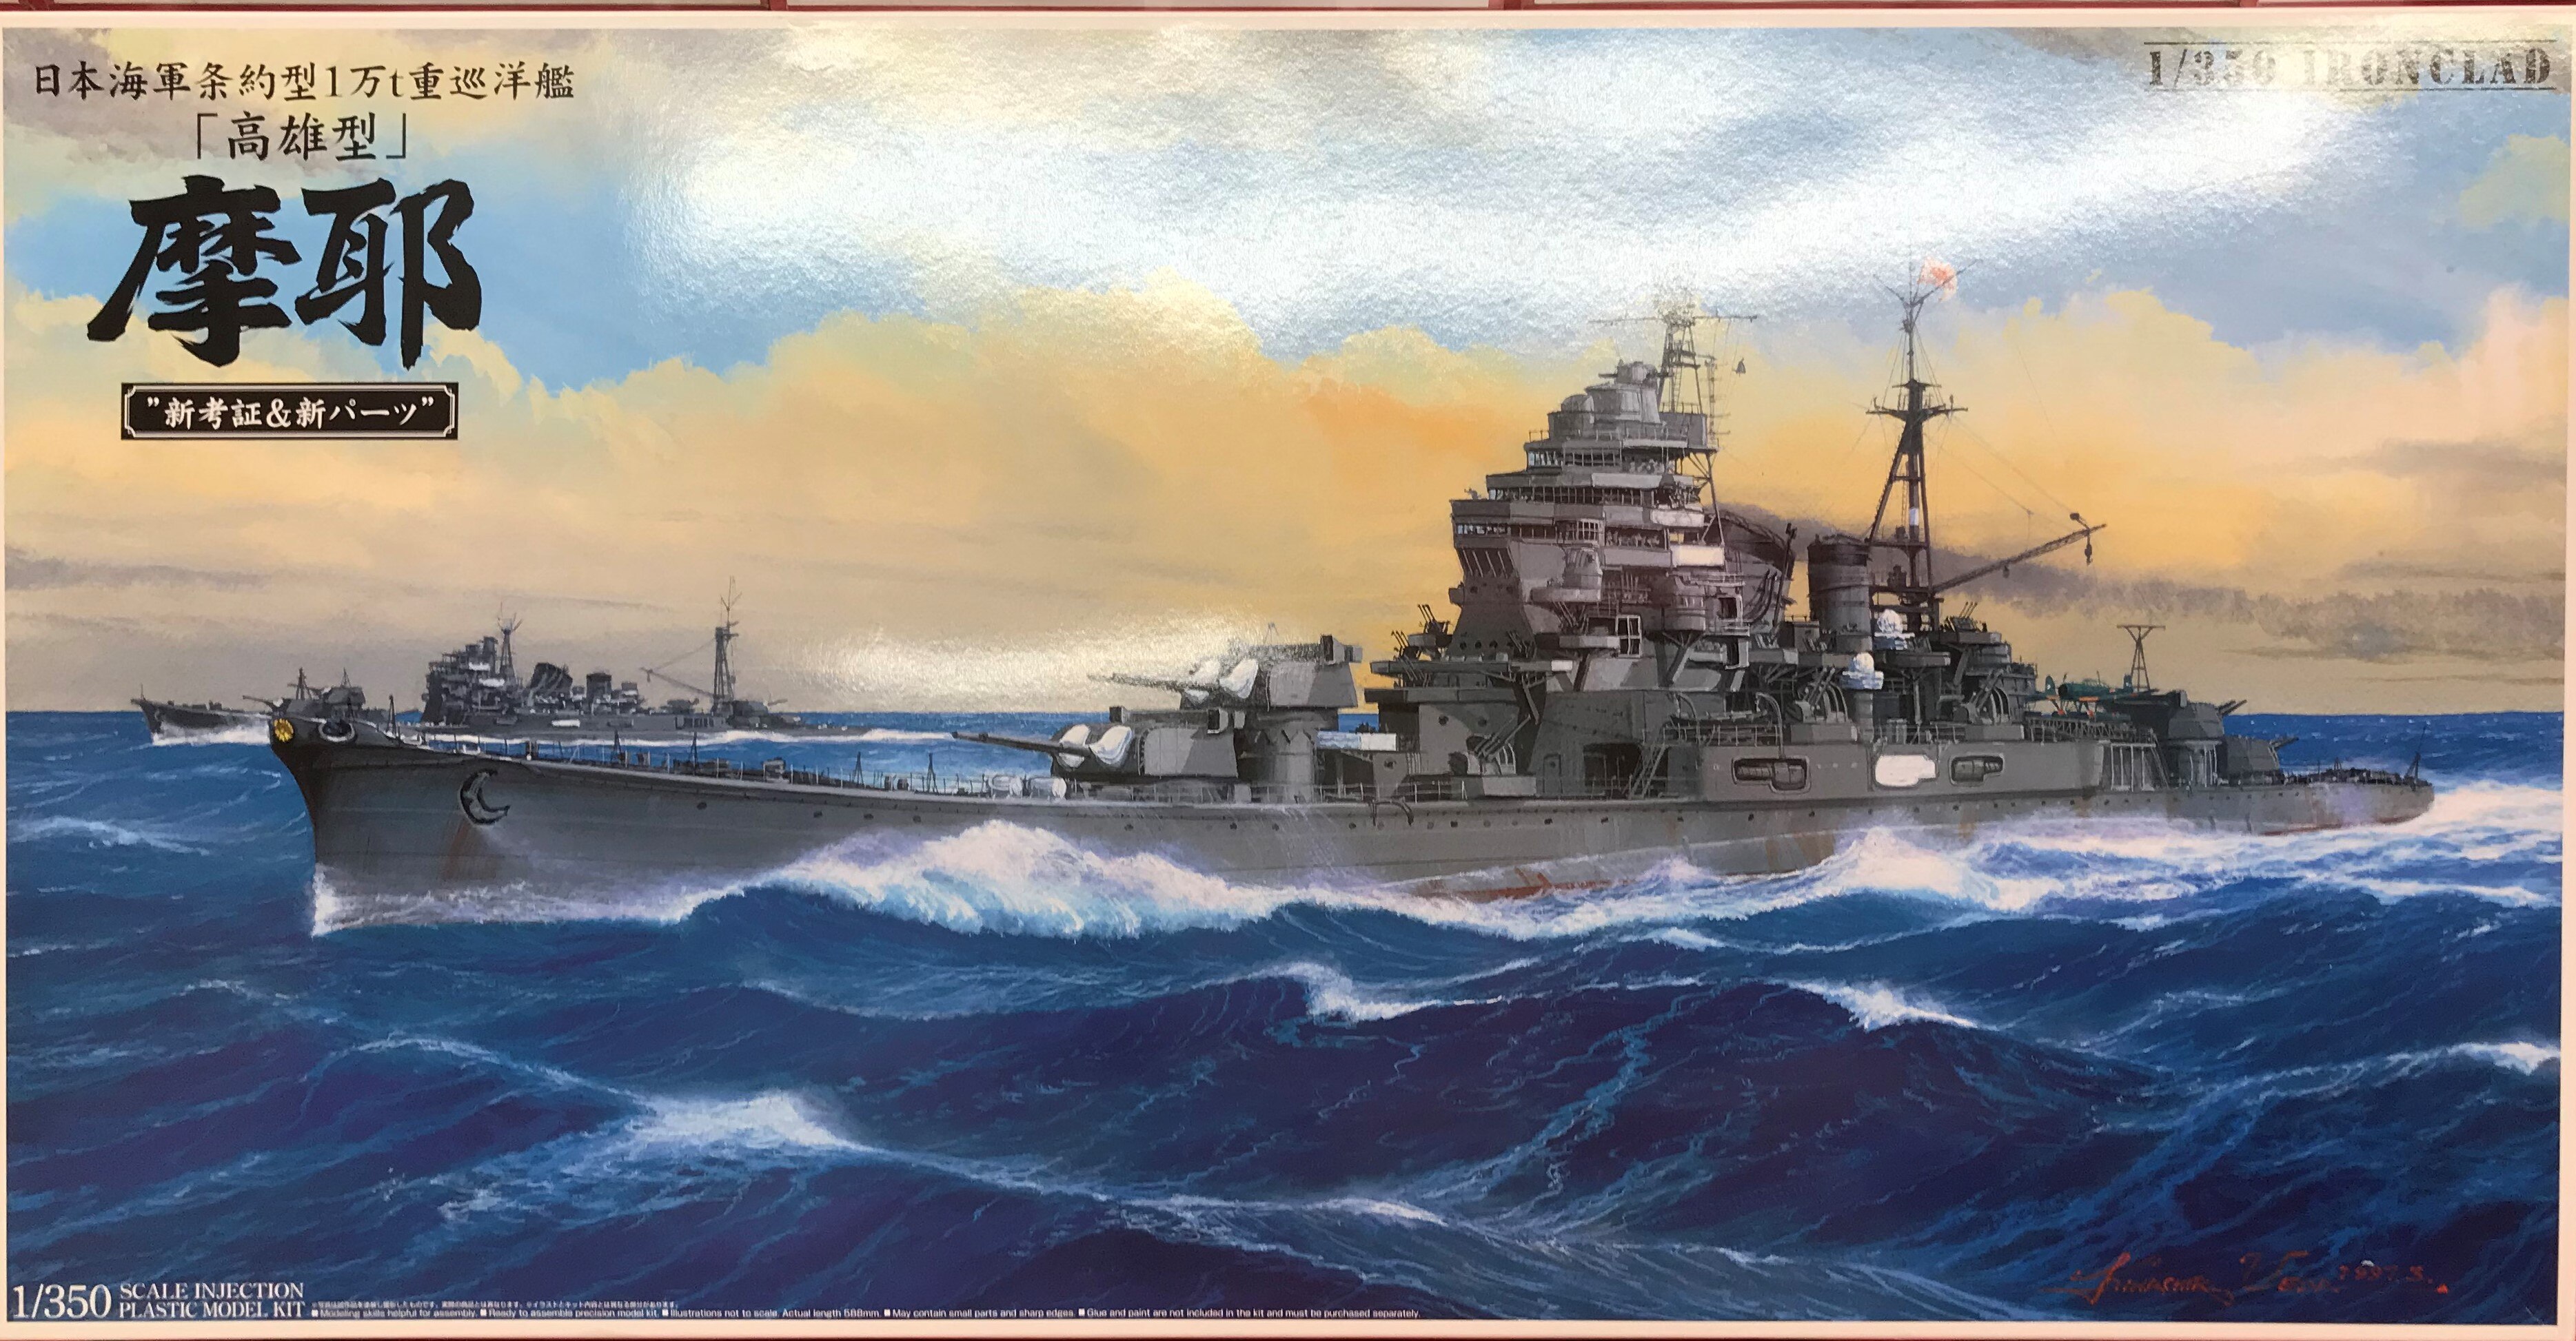 アオシマ 1/350 鋼鉄艦 日本海軍重巡洋艦 高雄 1942 リテイク 